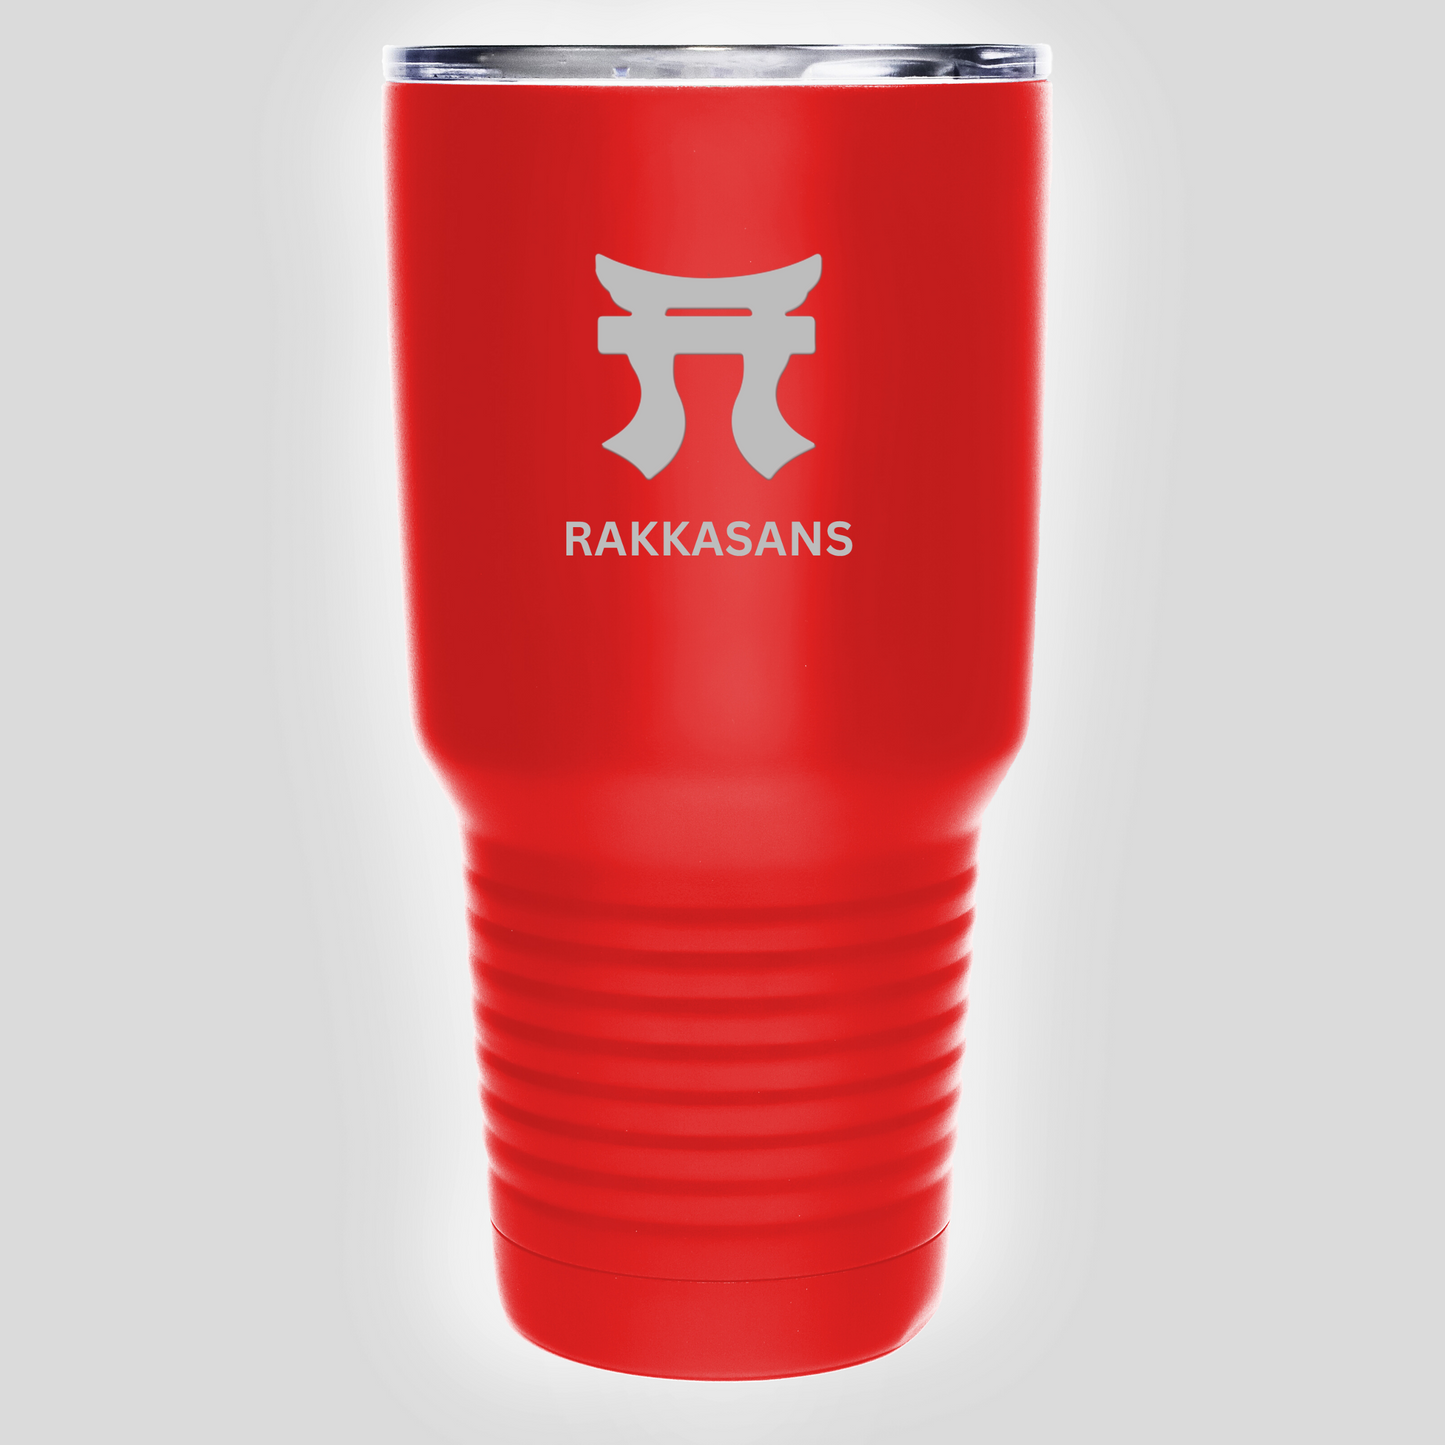 "Red Rakkasans 30oz Stainless Steel Tumbler with Laser Engraved Design."